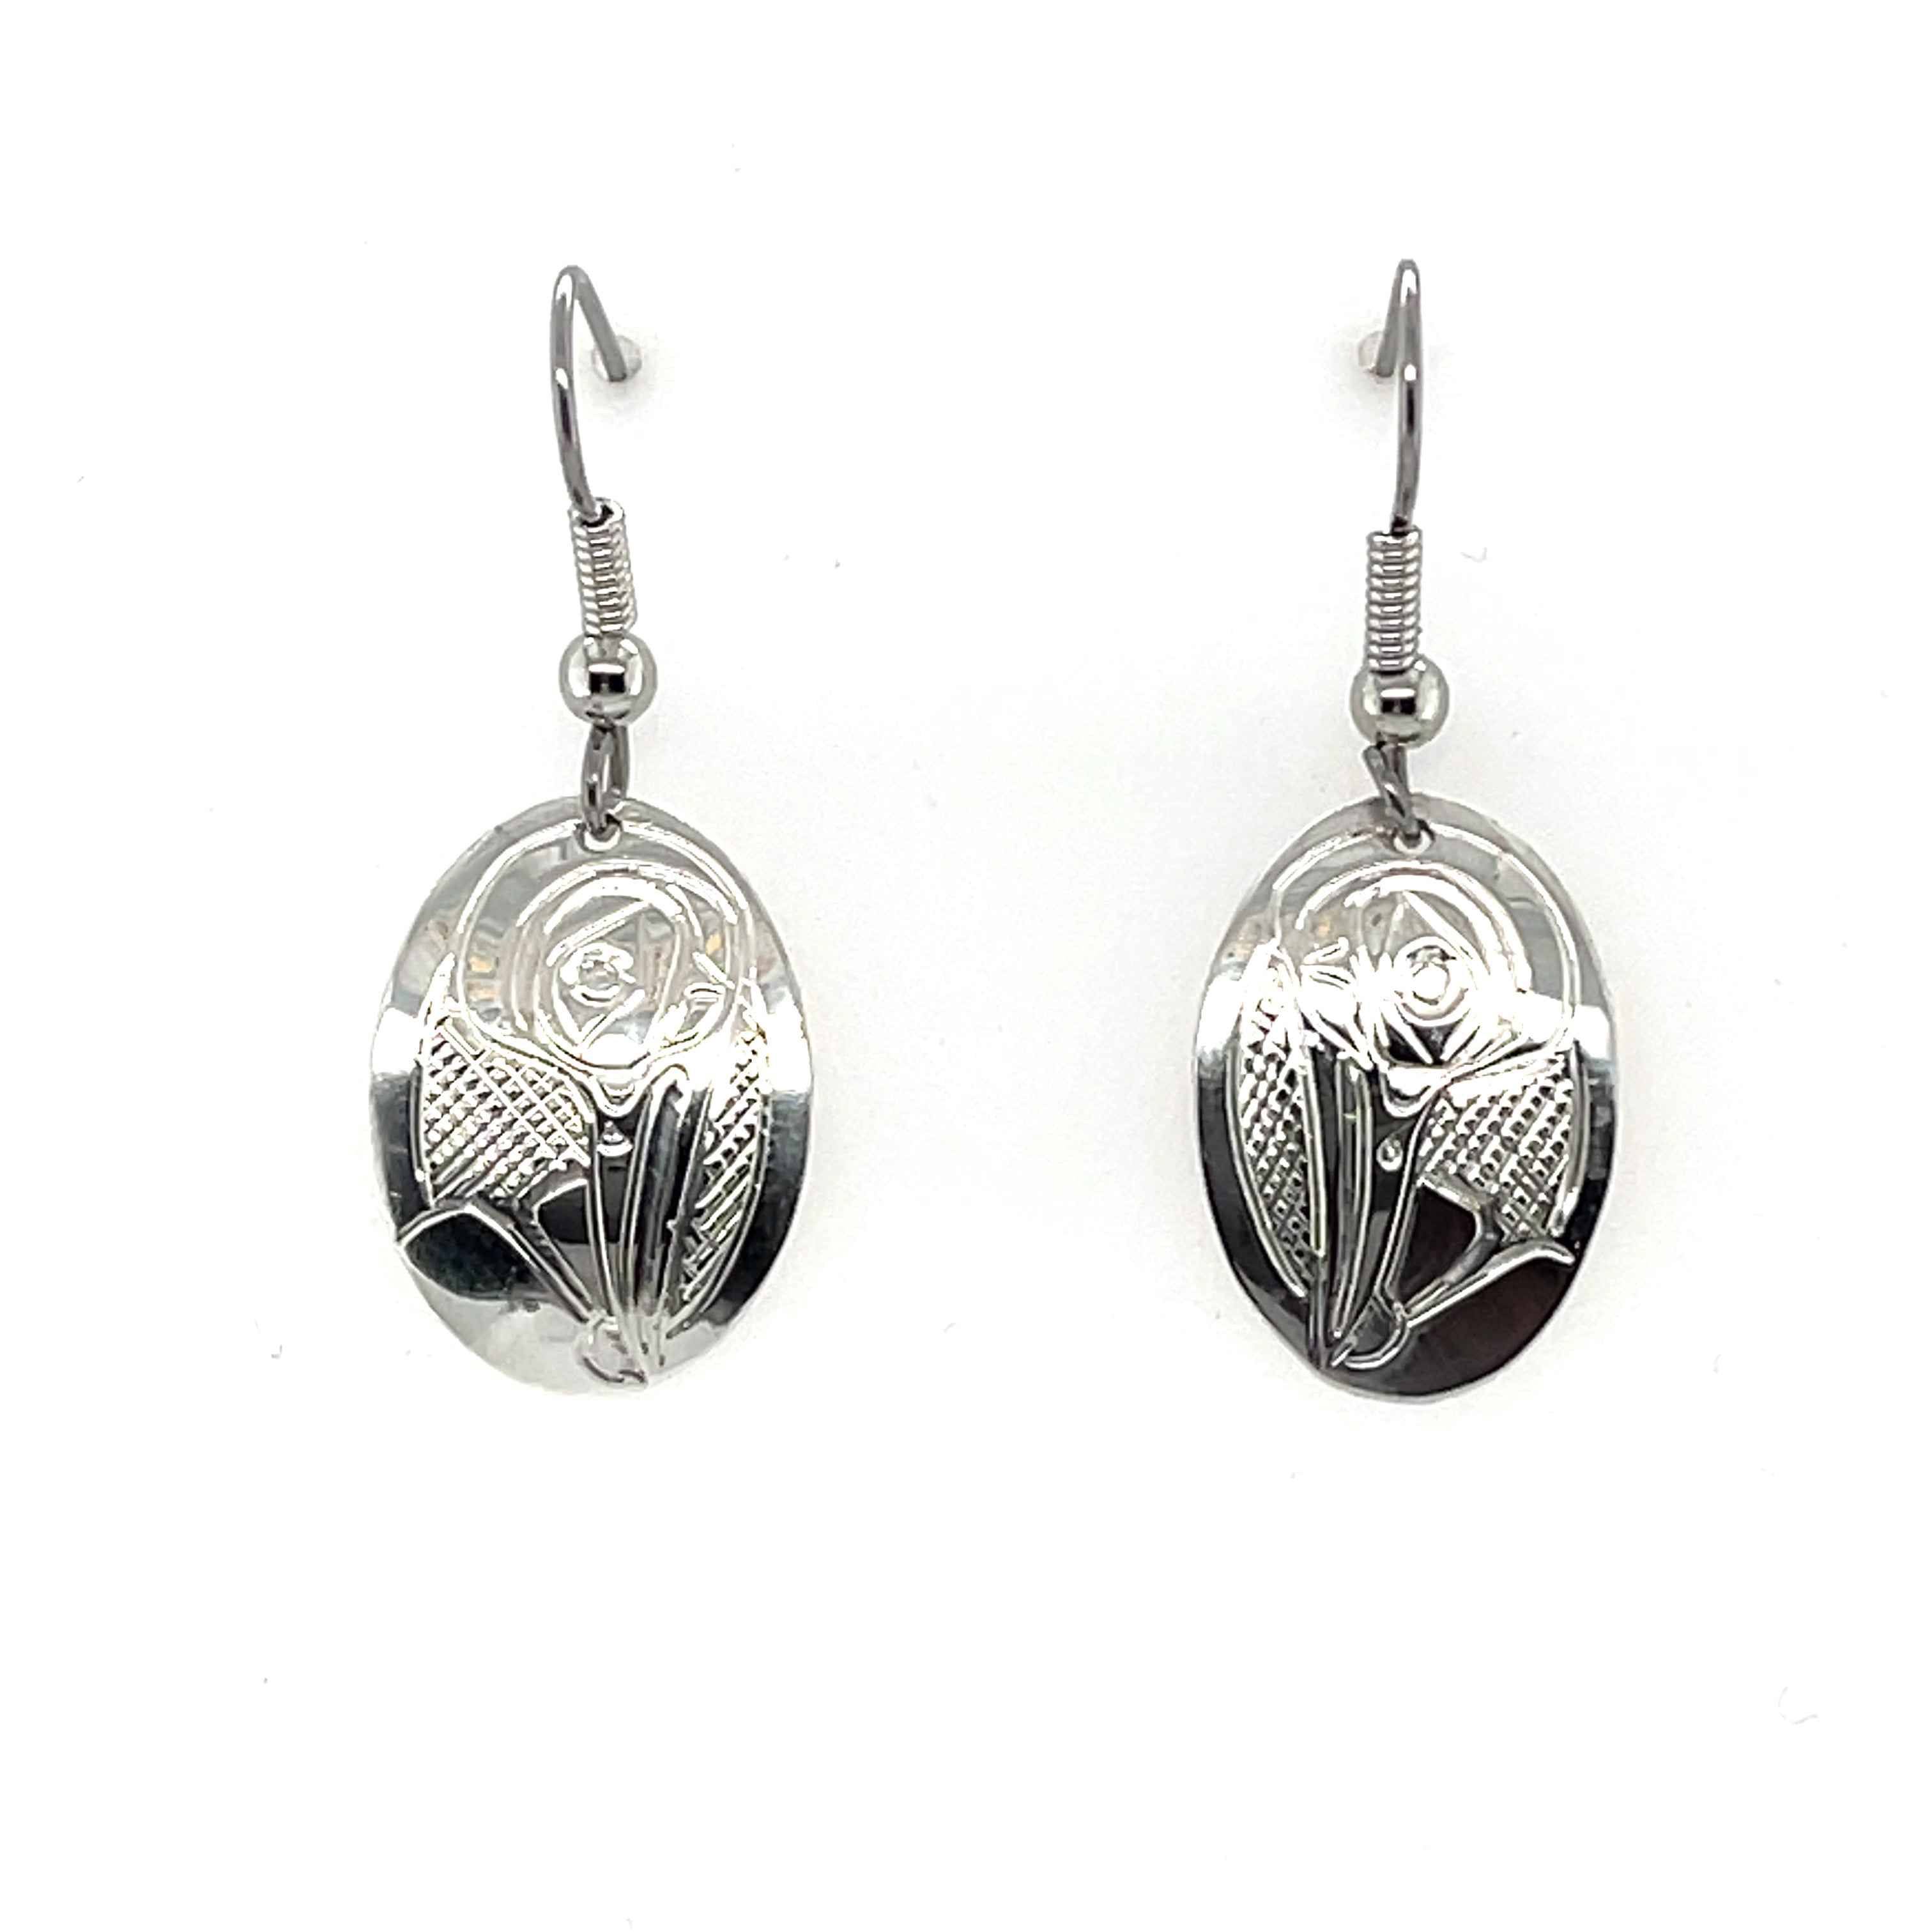 Earrings - Sterling Silver - Oval - Hummingbird